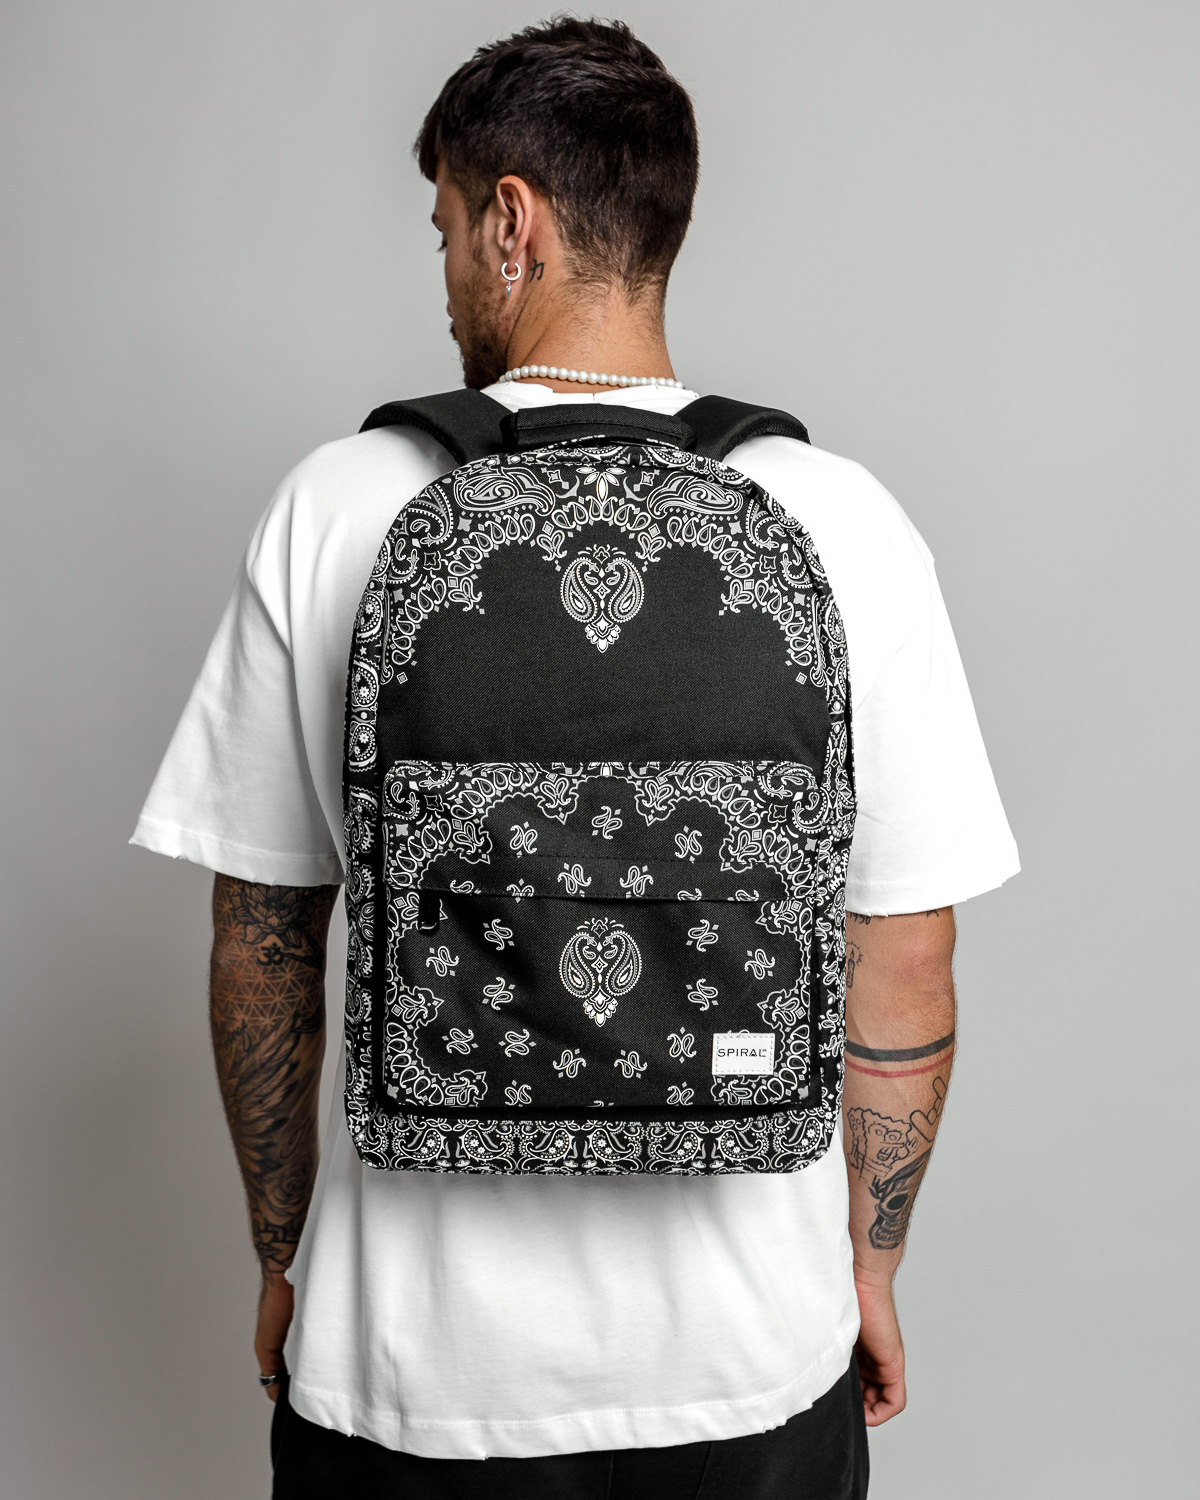 Spiral backpack